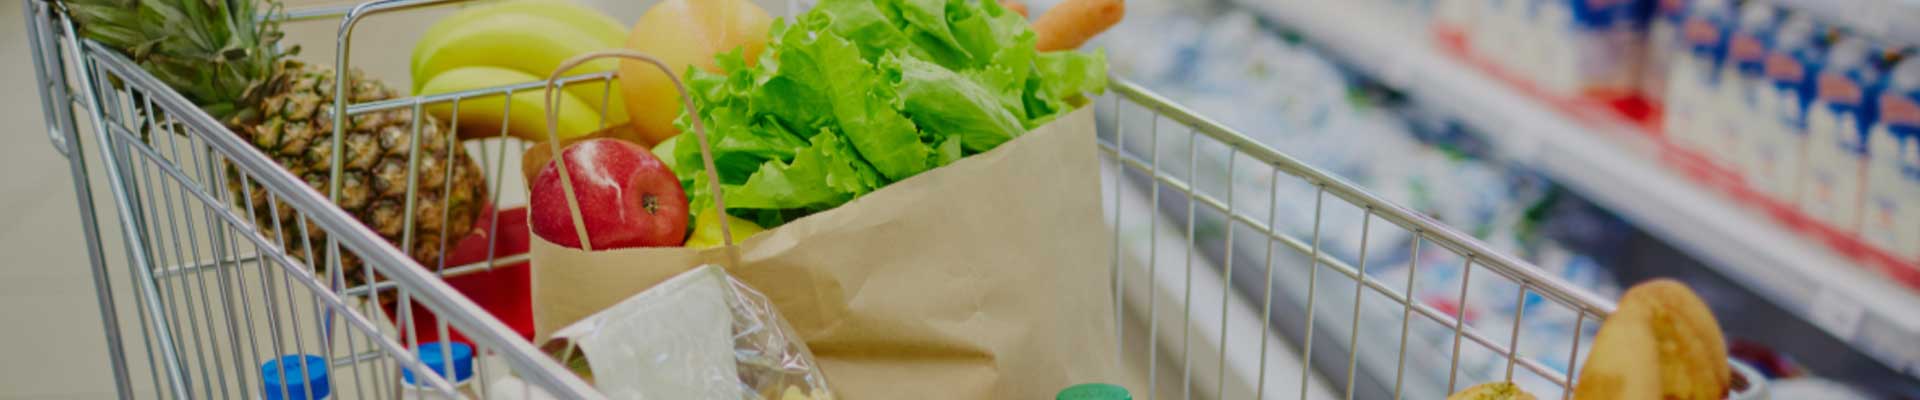 Biodegradable Food Packaging in Bakery & Patisserie Market